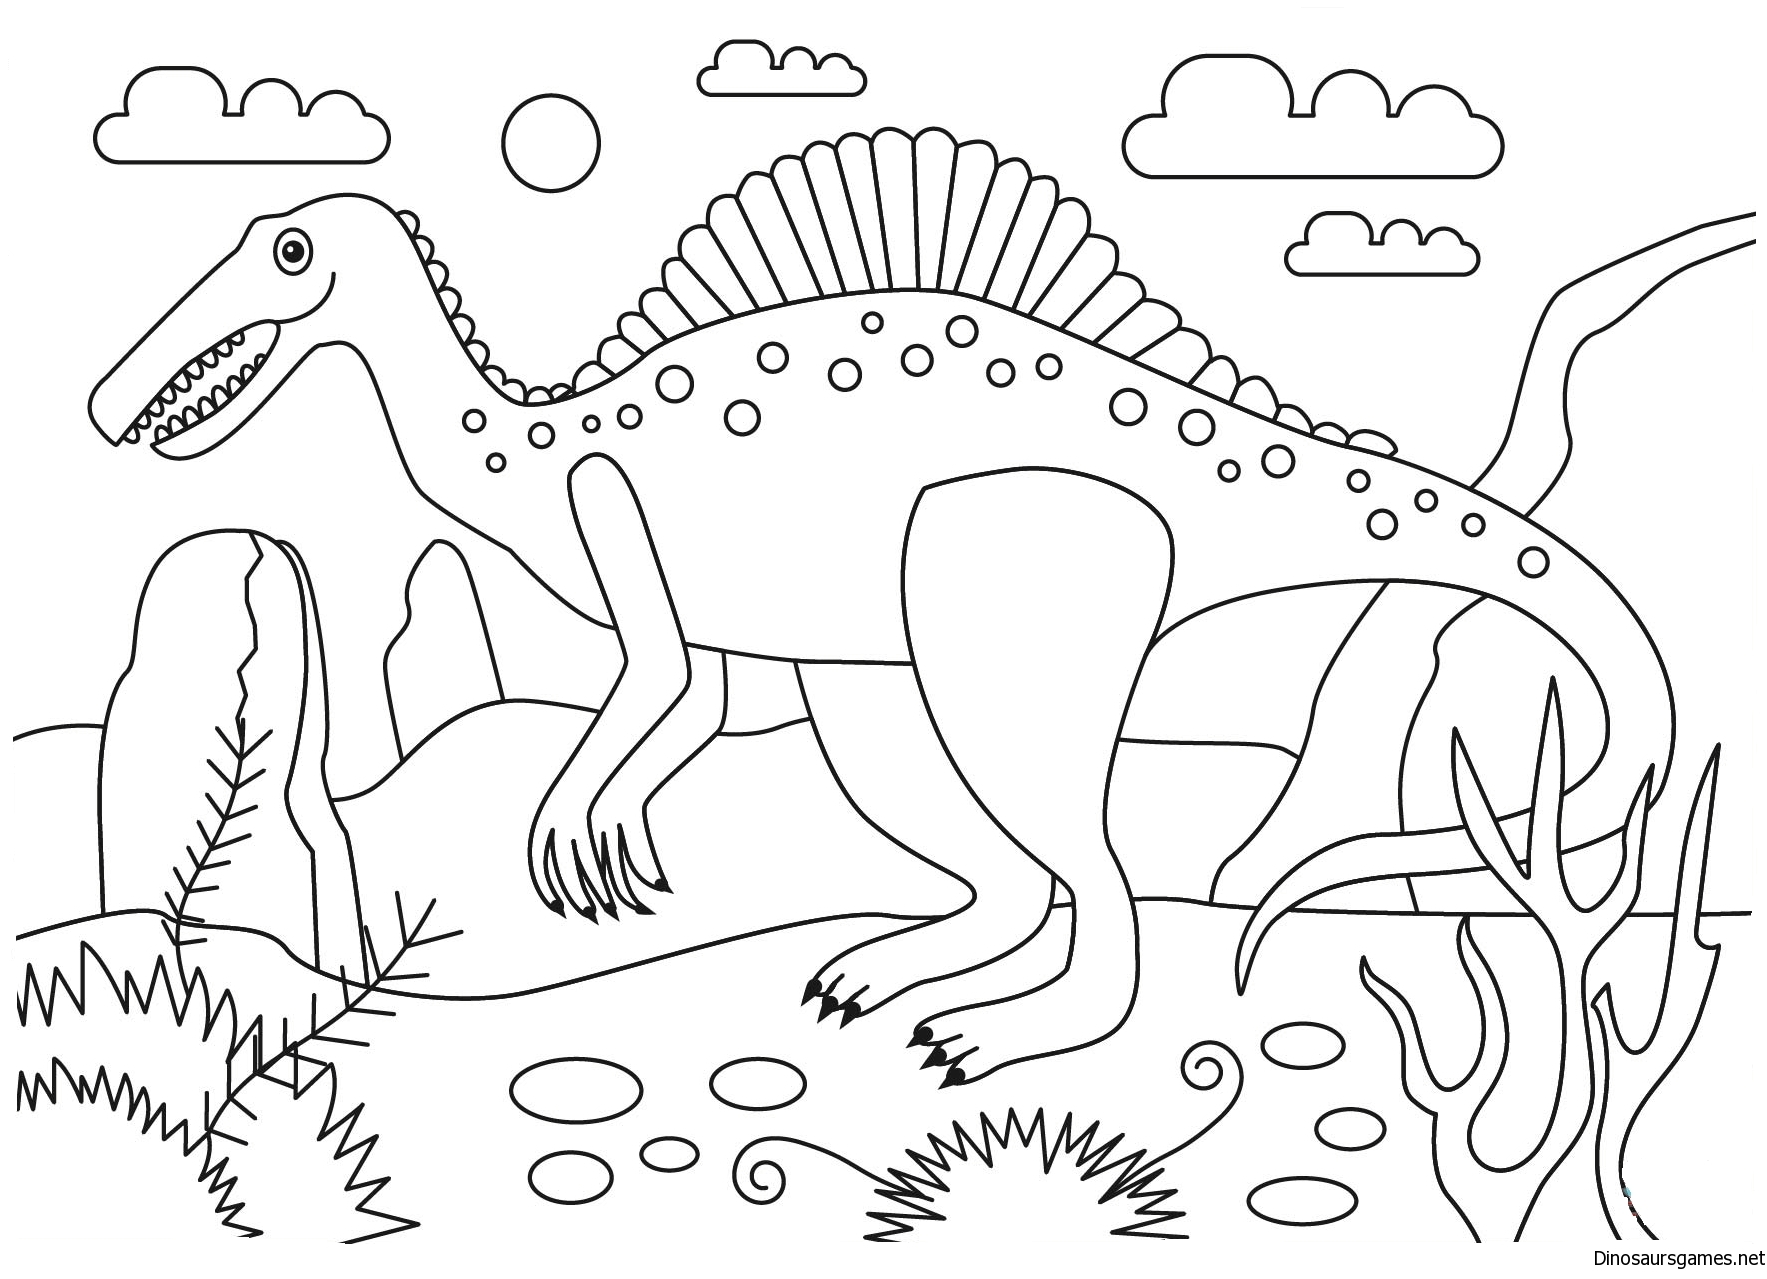 Динозавр раскраска распечатать а4. Спинозавр раскраска. Динозавры / раскраска. Динозавр раскраска для детей. Динозавры для раскрашивания детям.